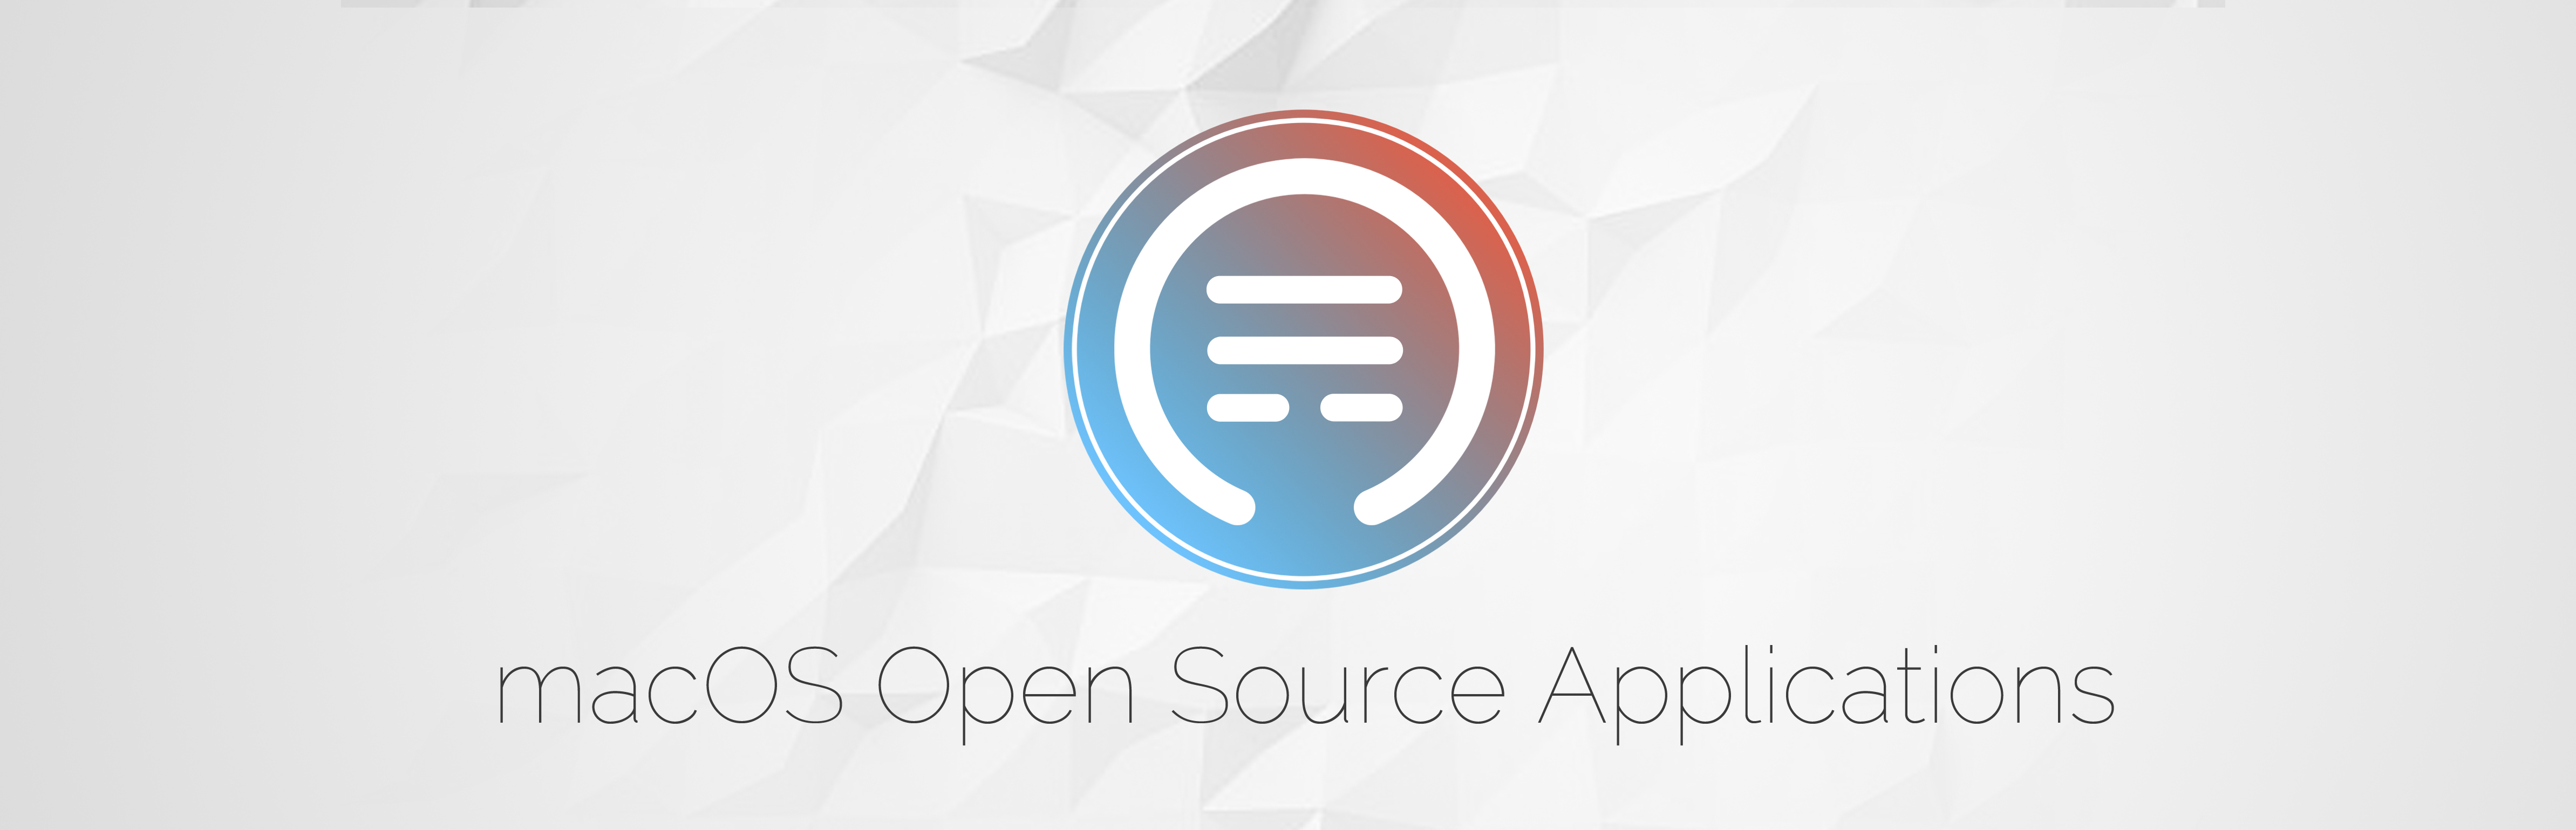 macos open source